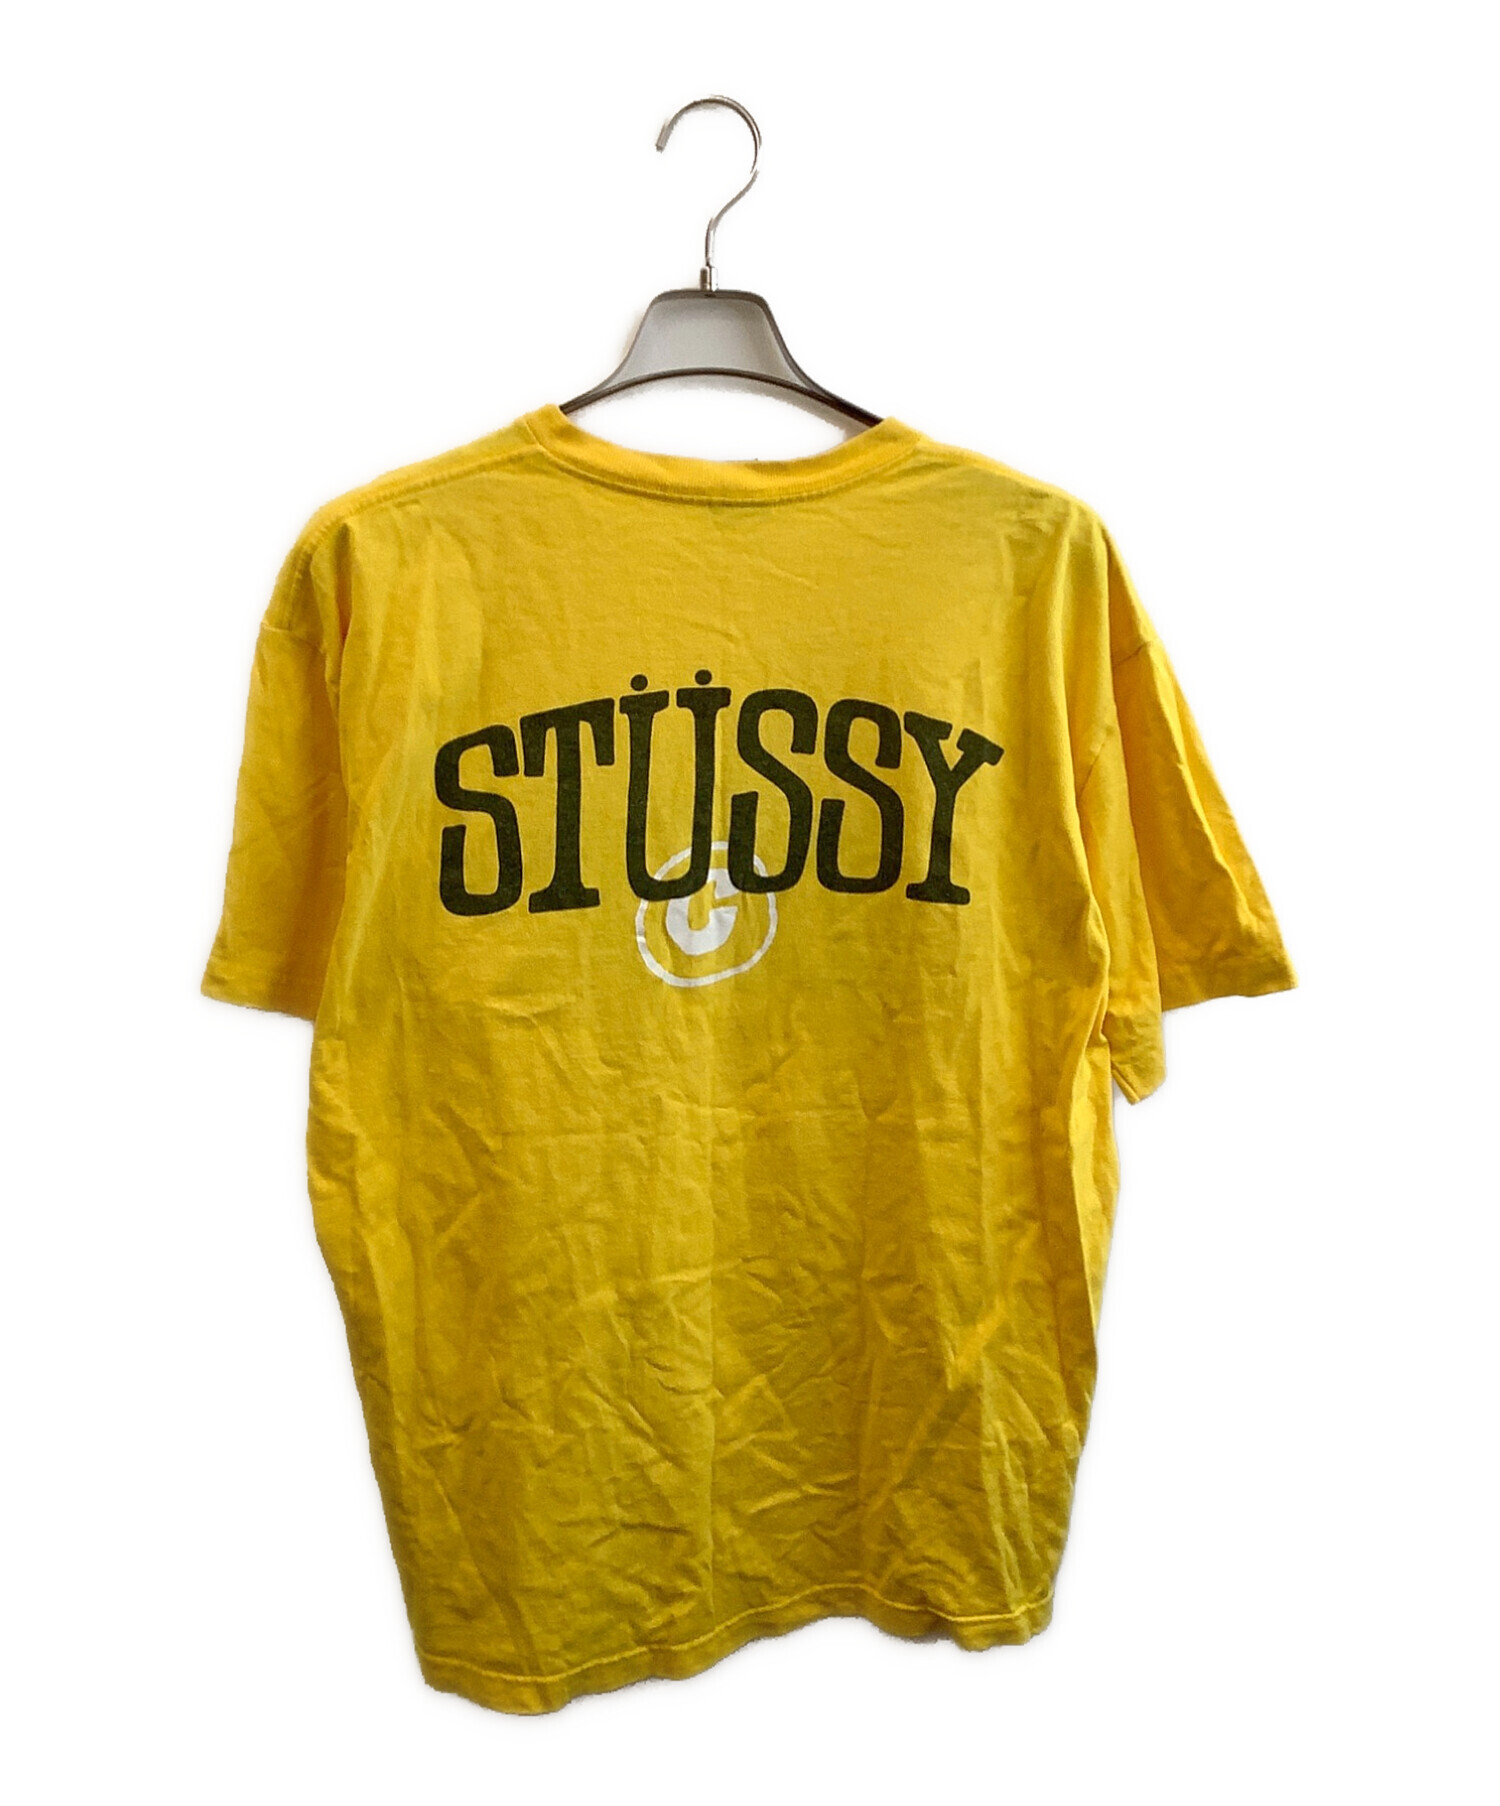 がらくた商店Stussy スットマーク イエロー Tシャツ